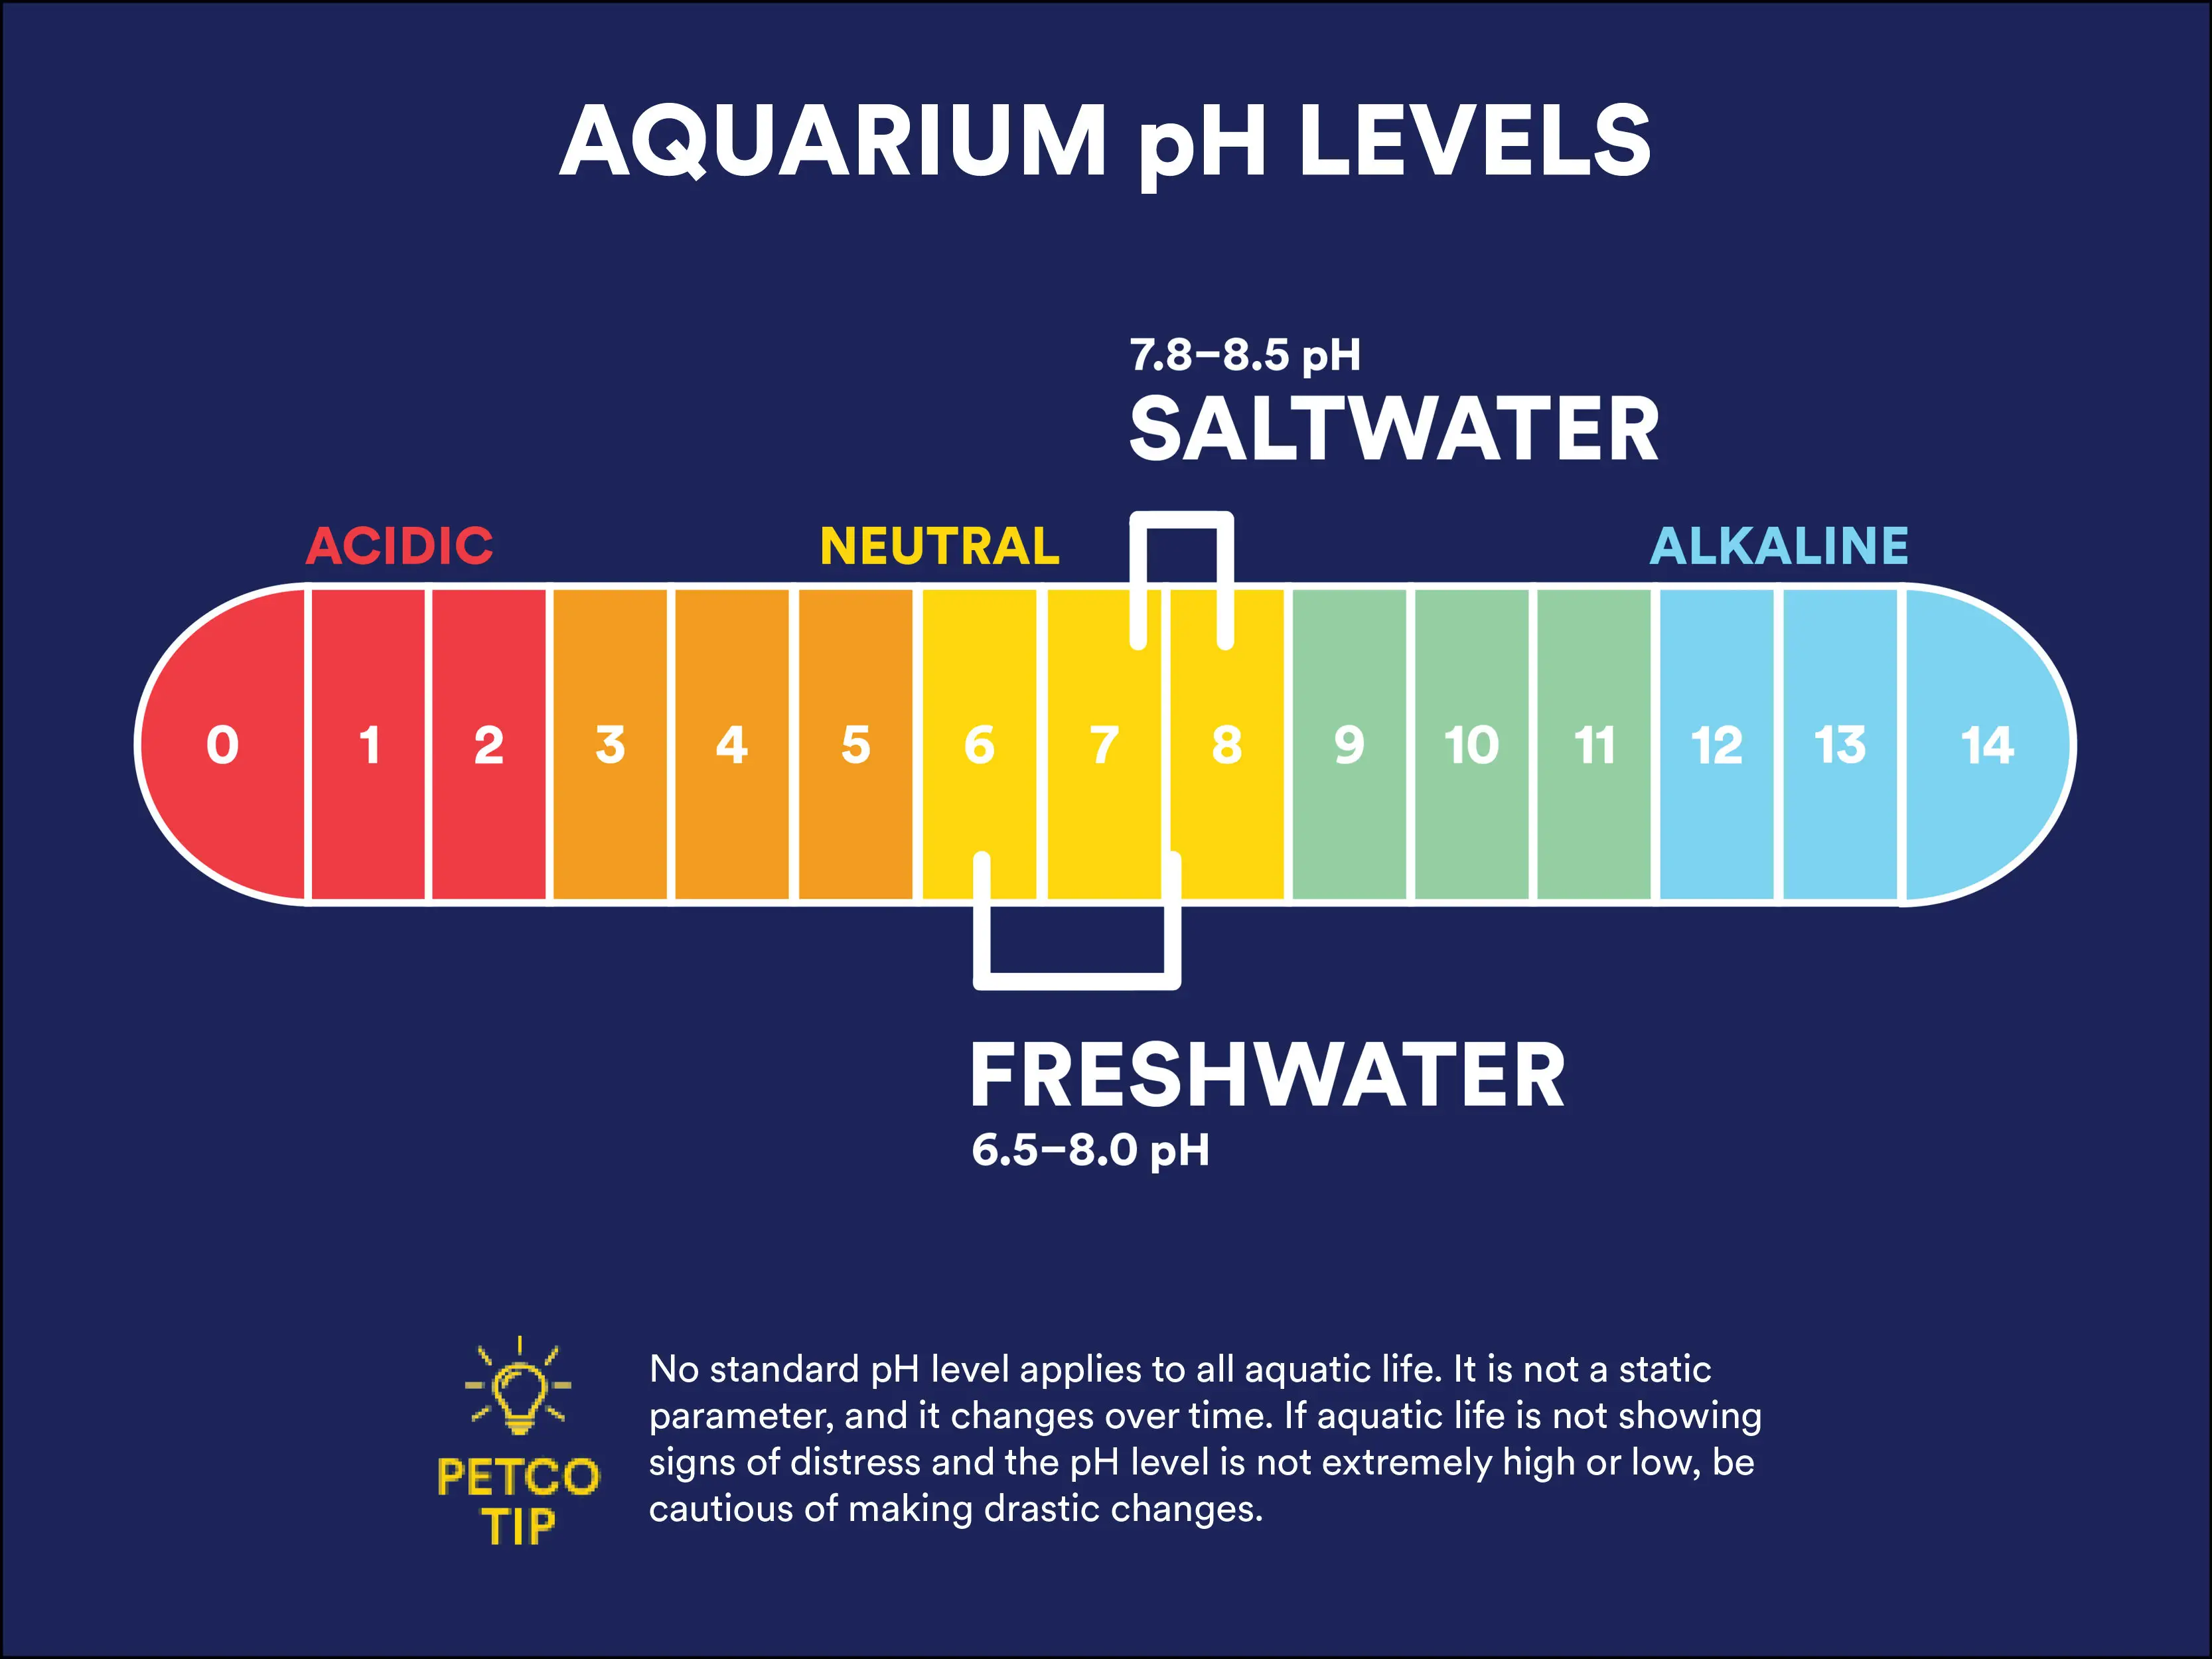 Does Petco Test Aquarium Water?